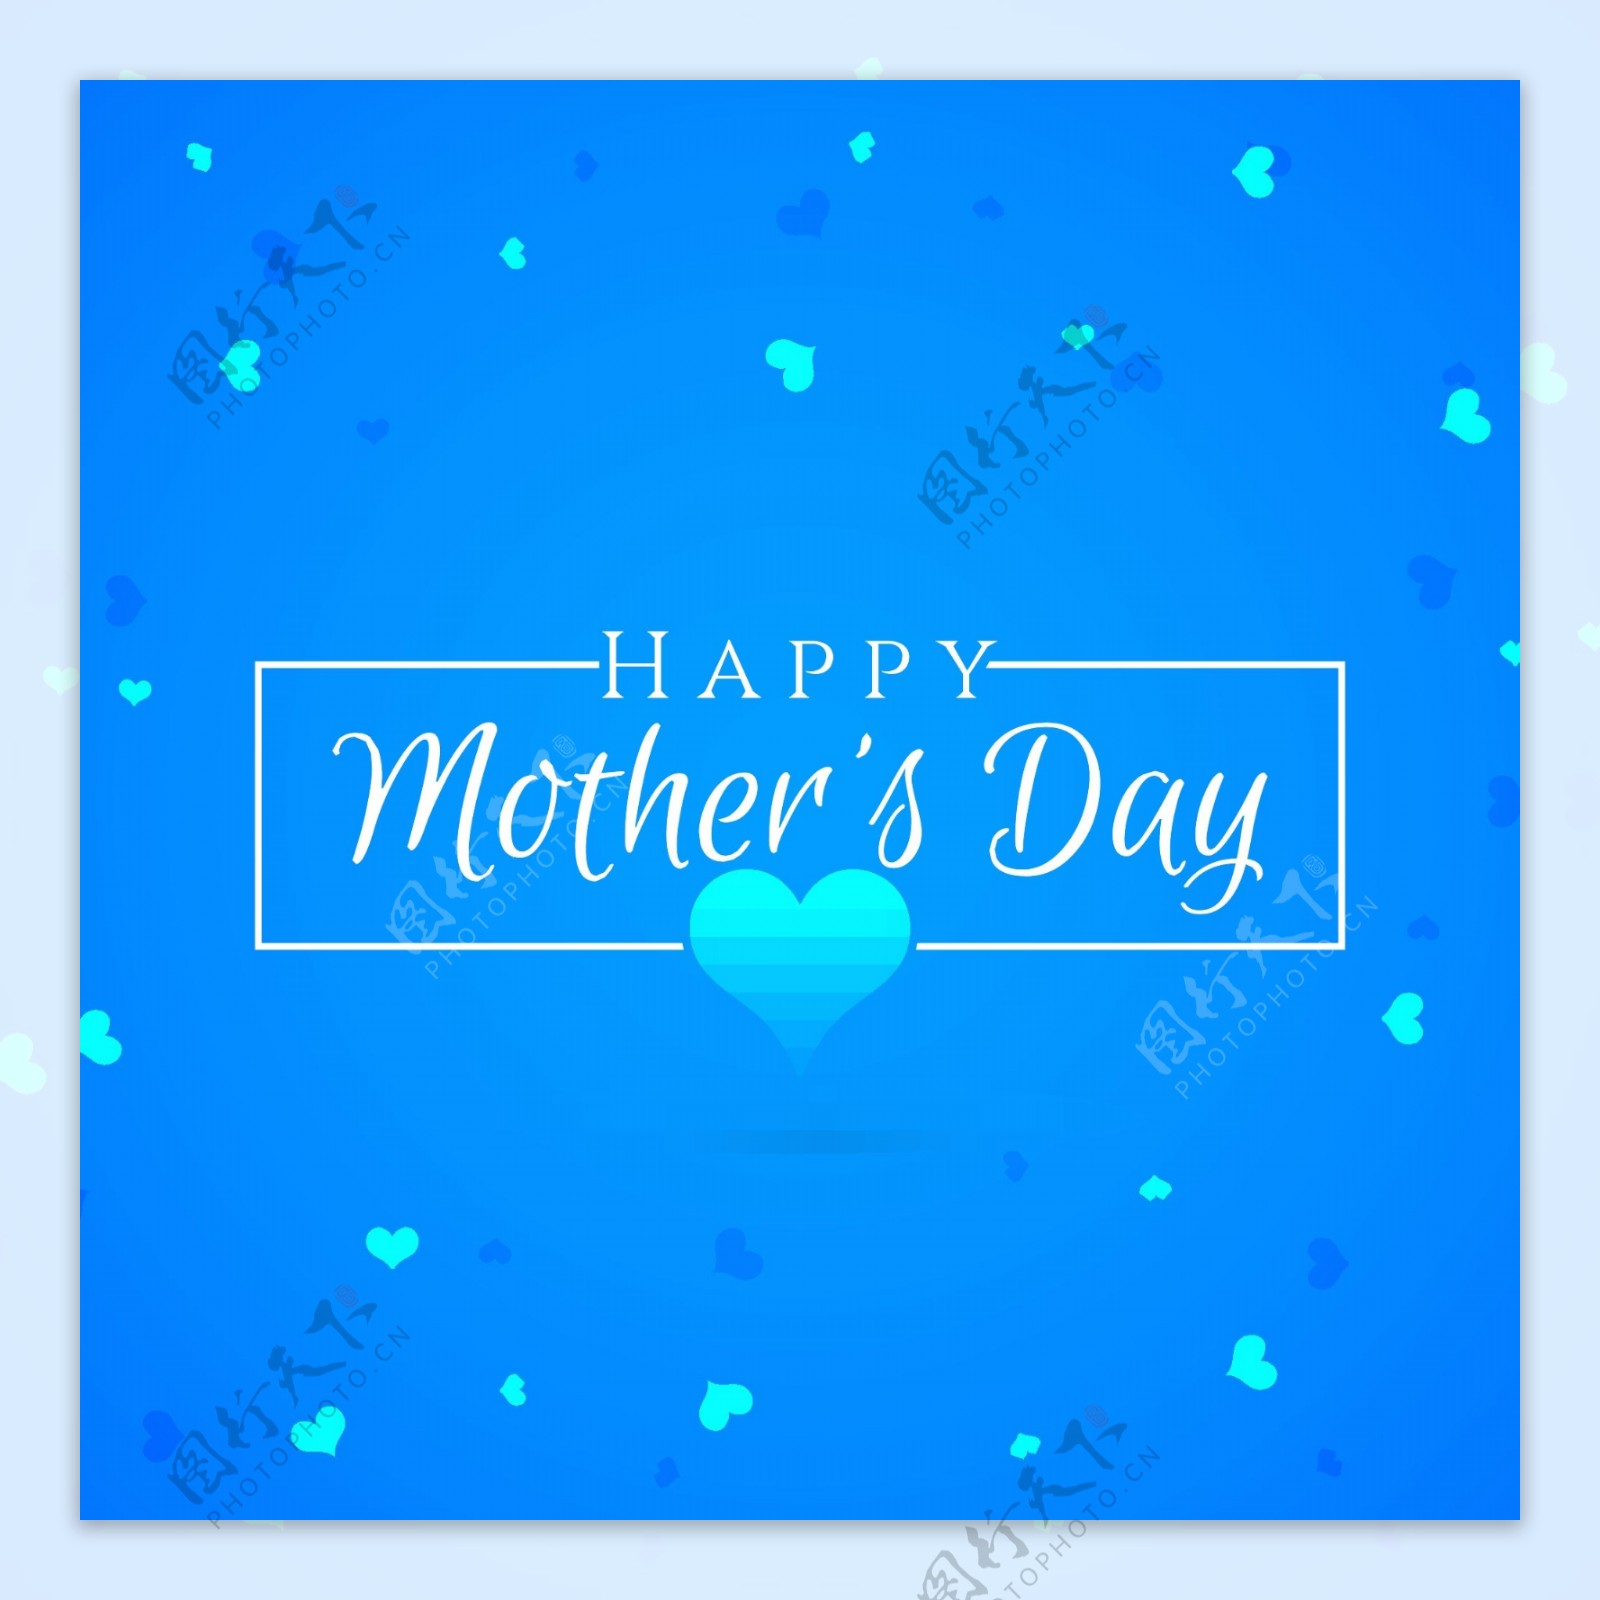 母亲节快乐心形图案蓝色背景